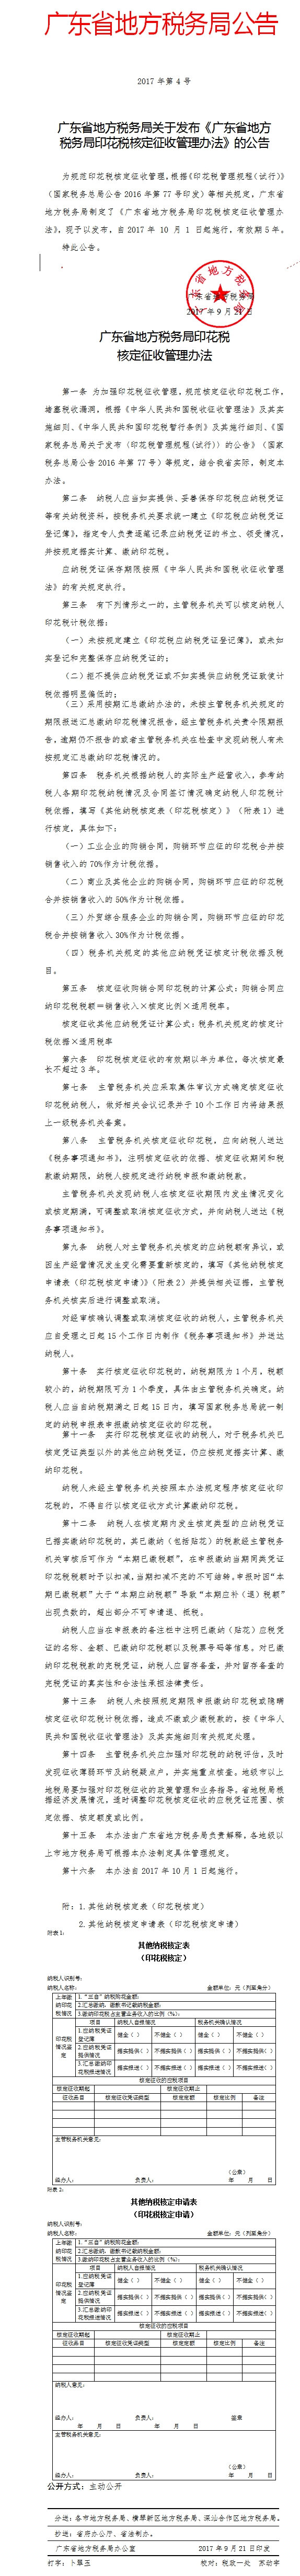 广东省地方税务局关于发布《广东省地方税务局印花税核定征收管理办法》的公告